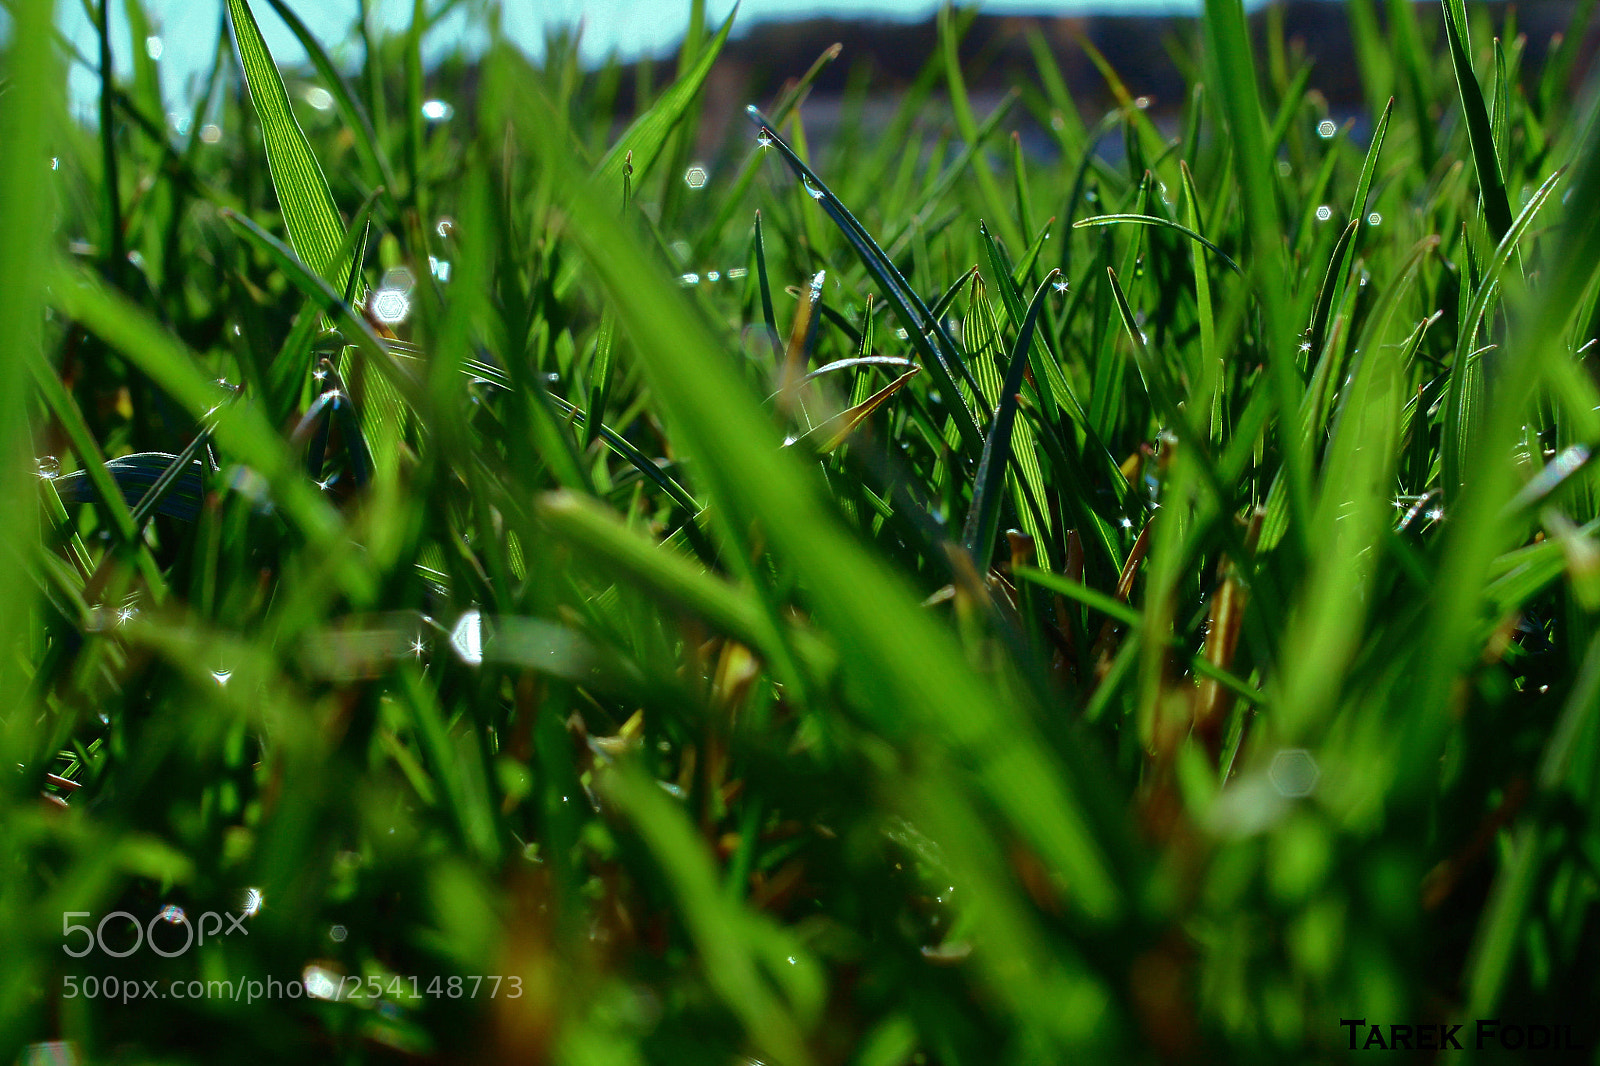 Canon EOS 1100D (EOS Rebel T3 / EOS Kiss X50) sample photo. Green grass photography